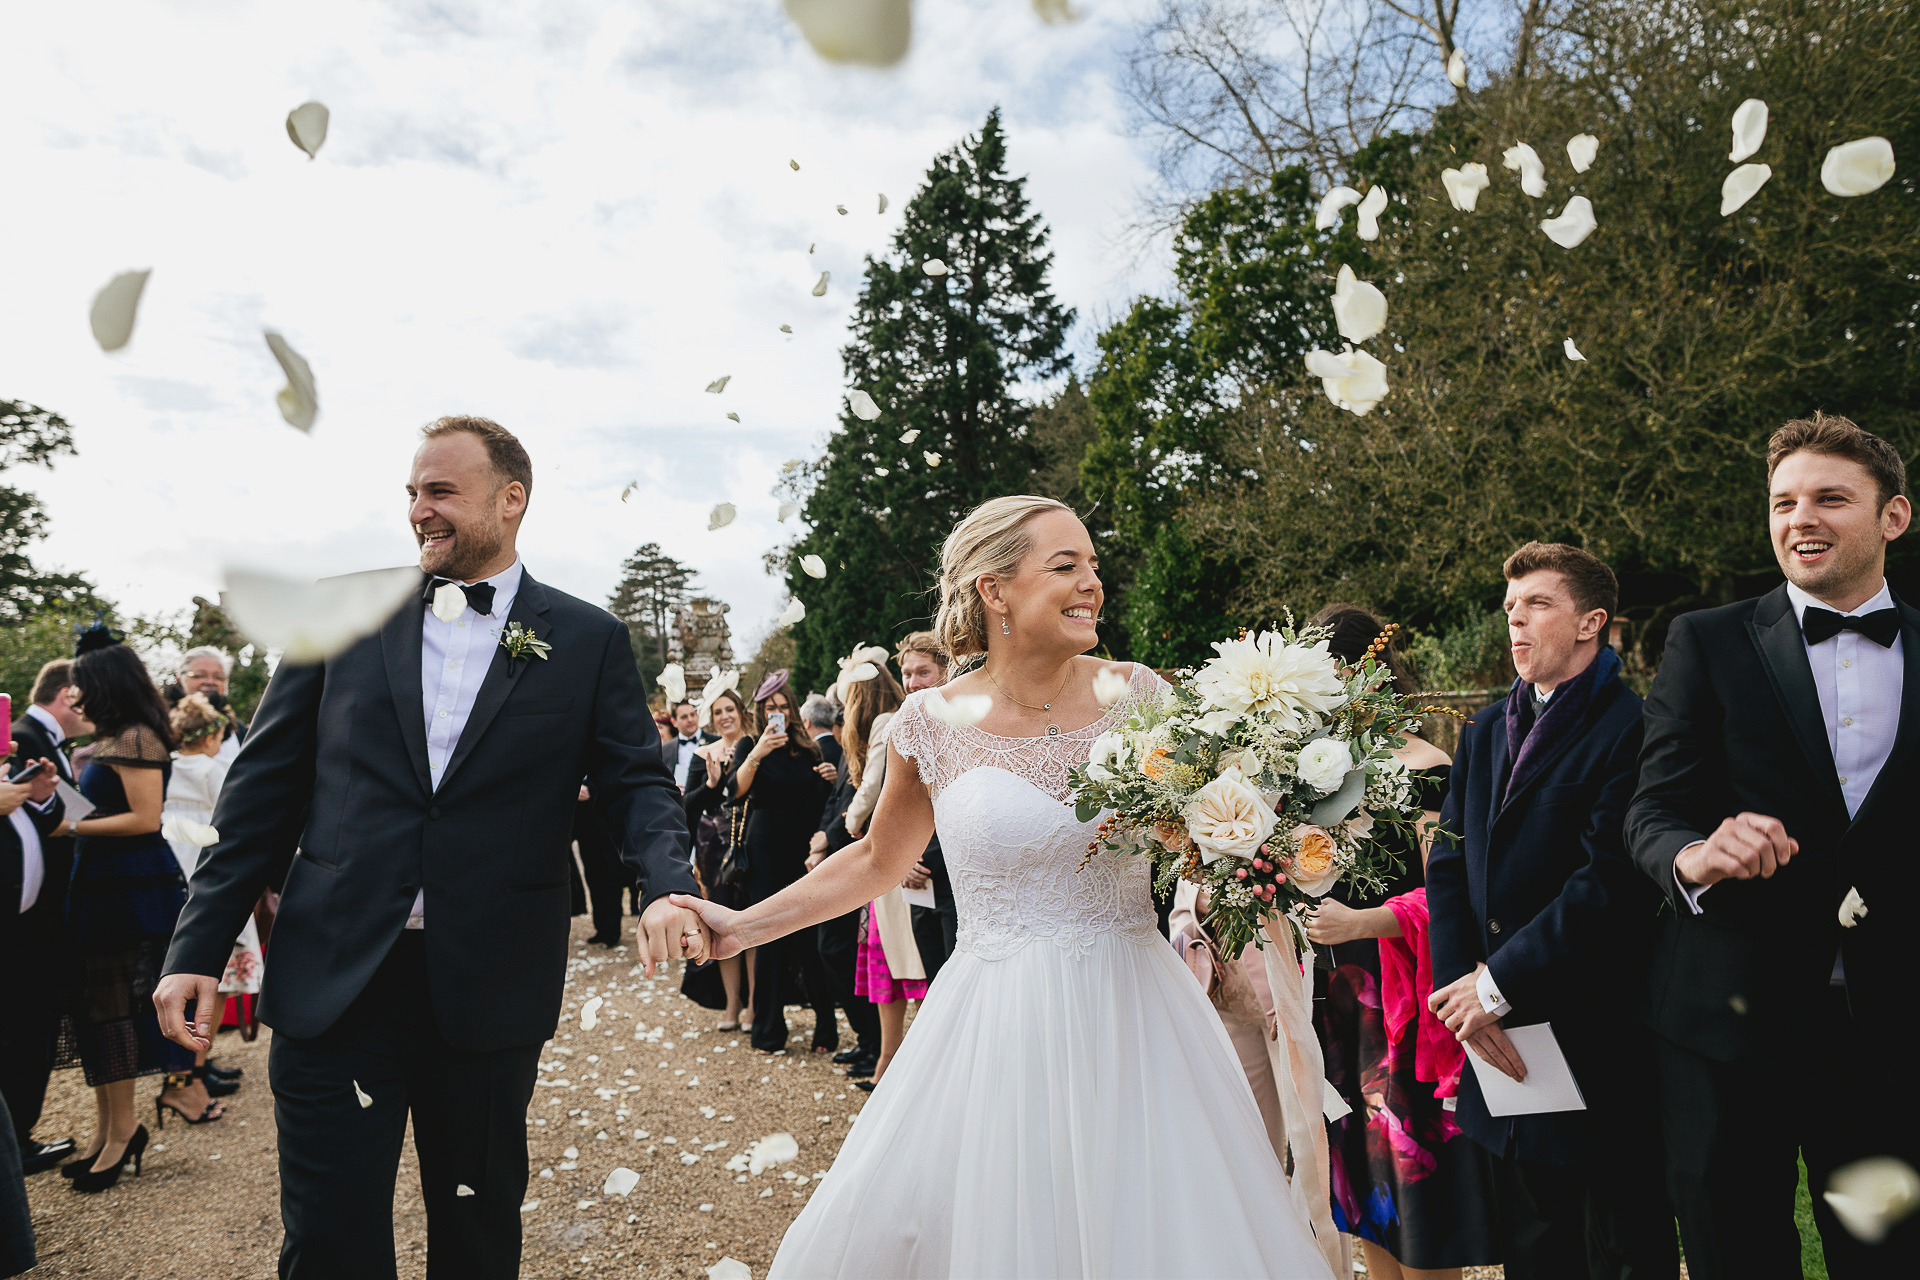 Elegant bride and groom smiling through rose petal confetti